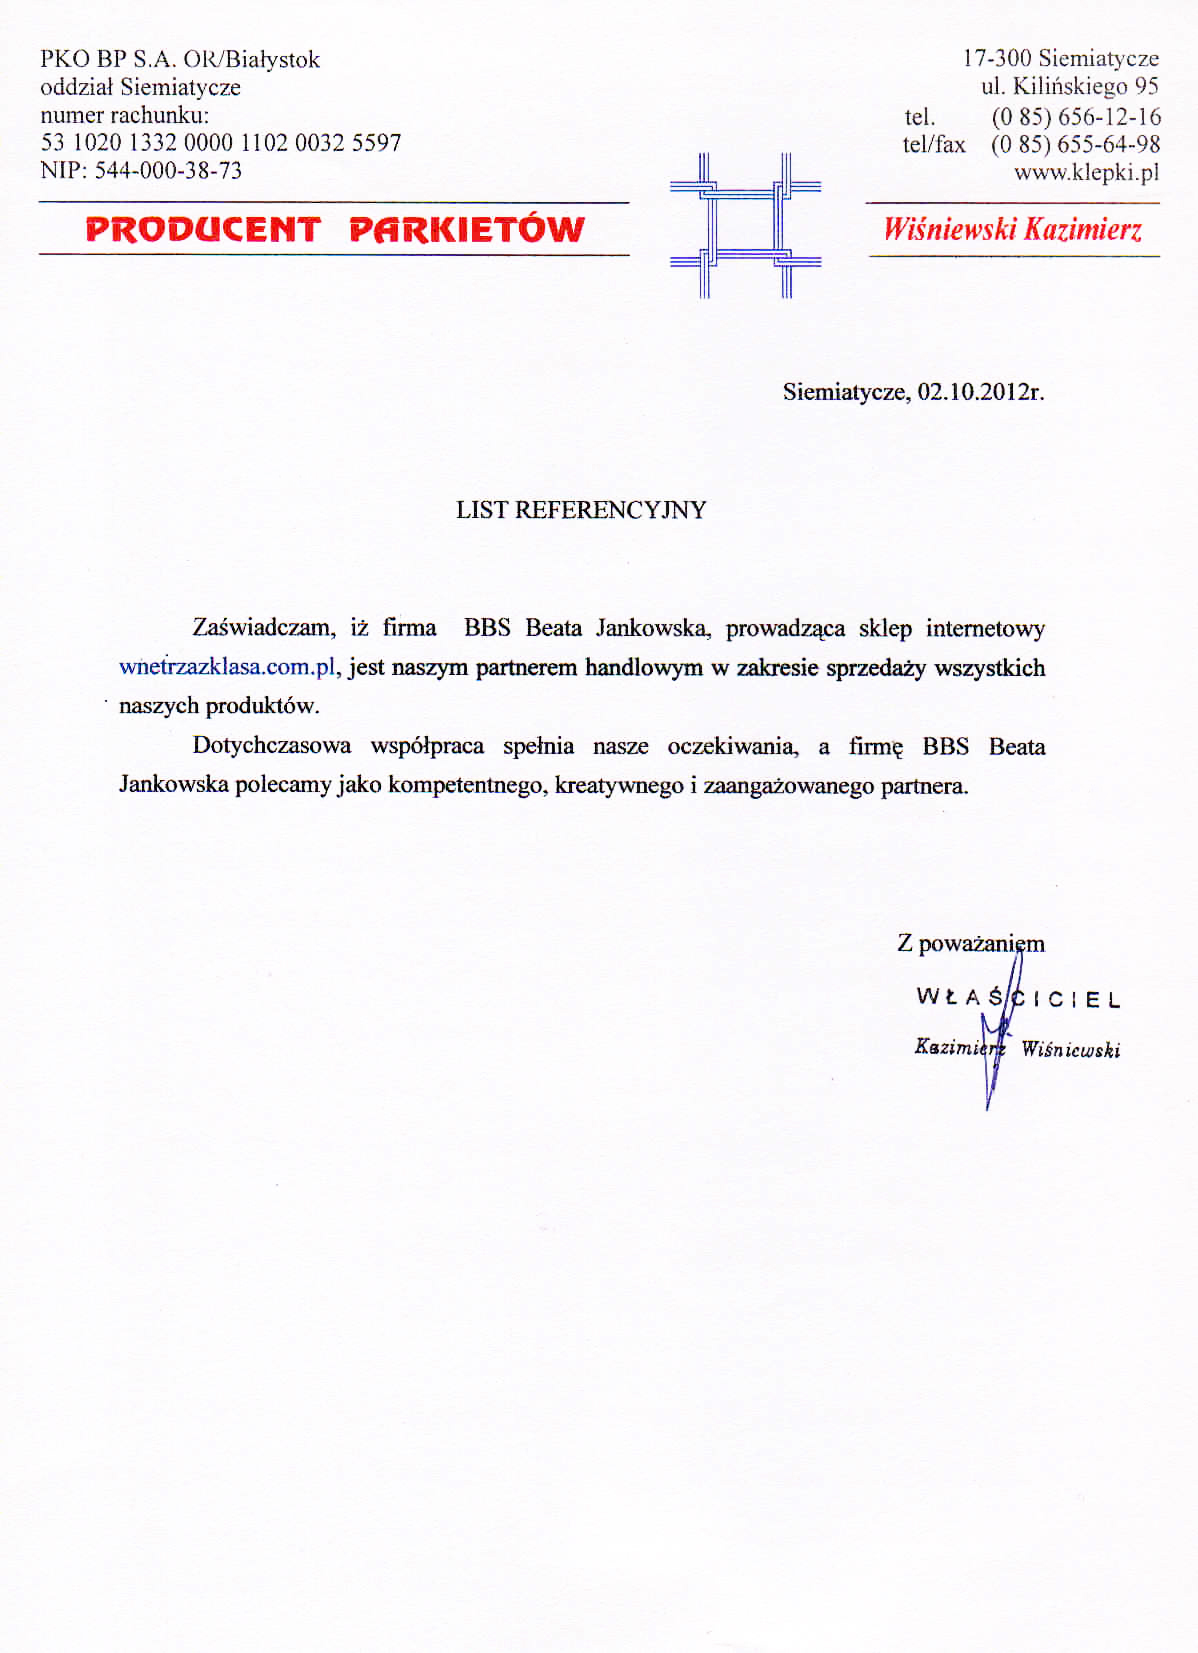 List referencyjny Wiśniewski parkiety